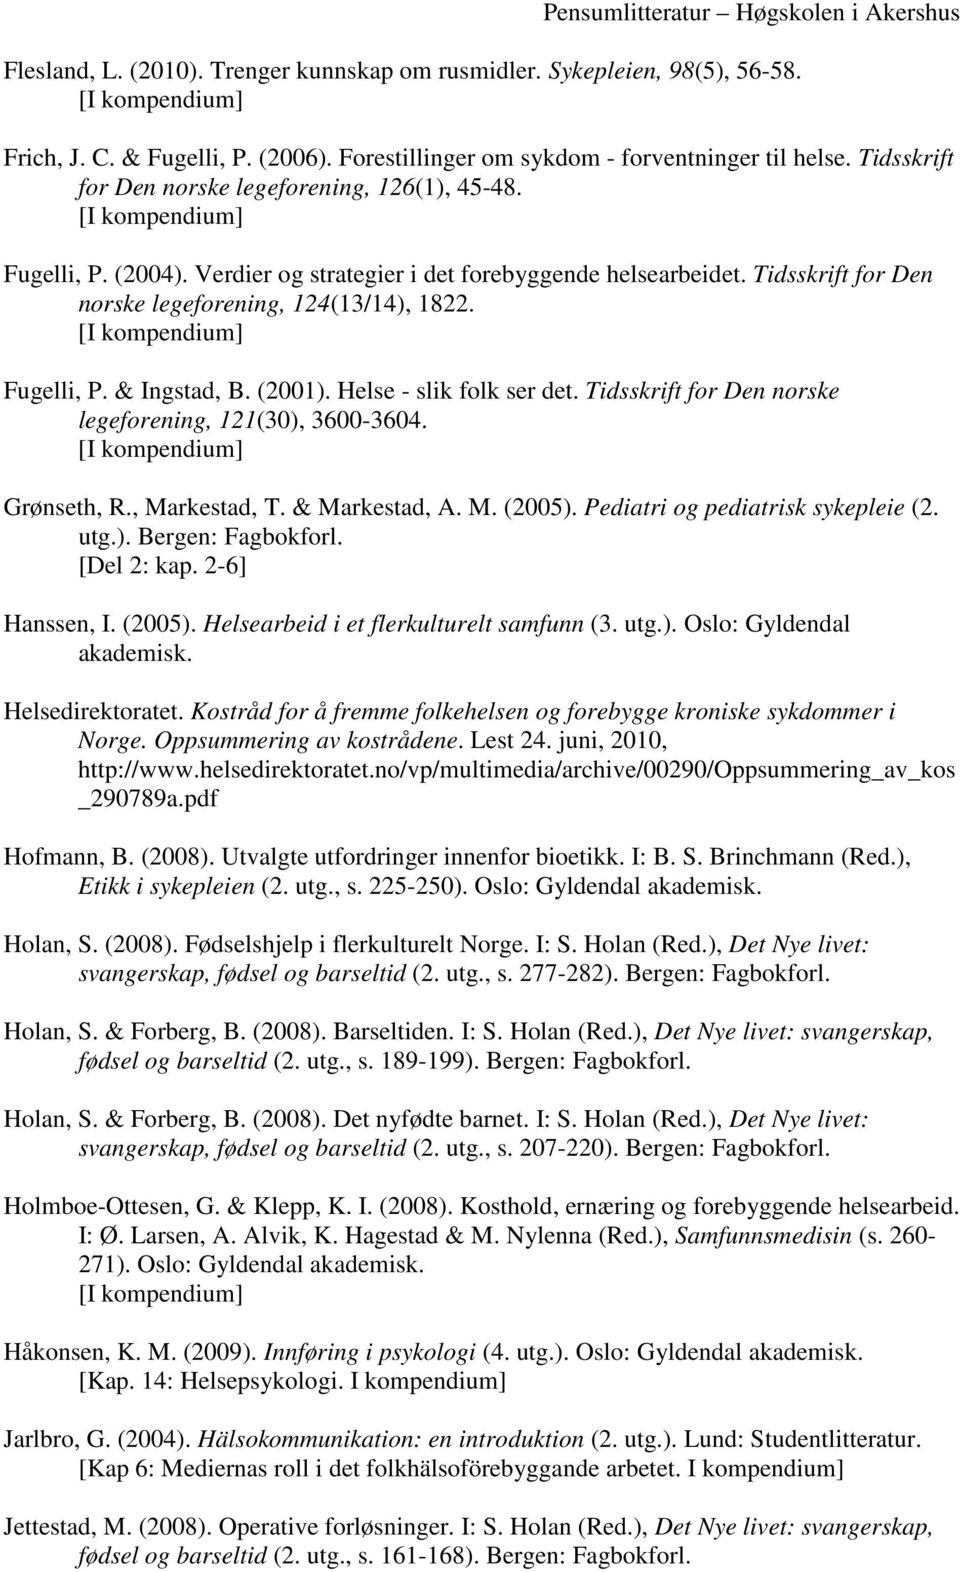 (2001). Helse - slik folk ser det. Tidsskrift for Den norske legeforening, 121(30), 3600-3604. Grønseth, R., Markestad, T. & Markestad, A. M. (2005). Pediatri og pediatrisk sykepleie (2. utg.). Bergen: Fagbokforl.